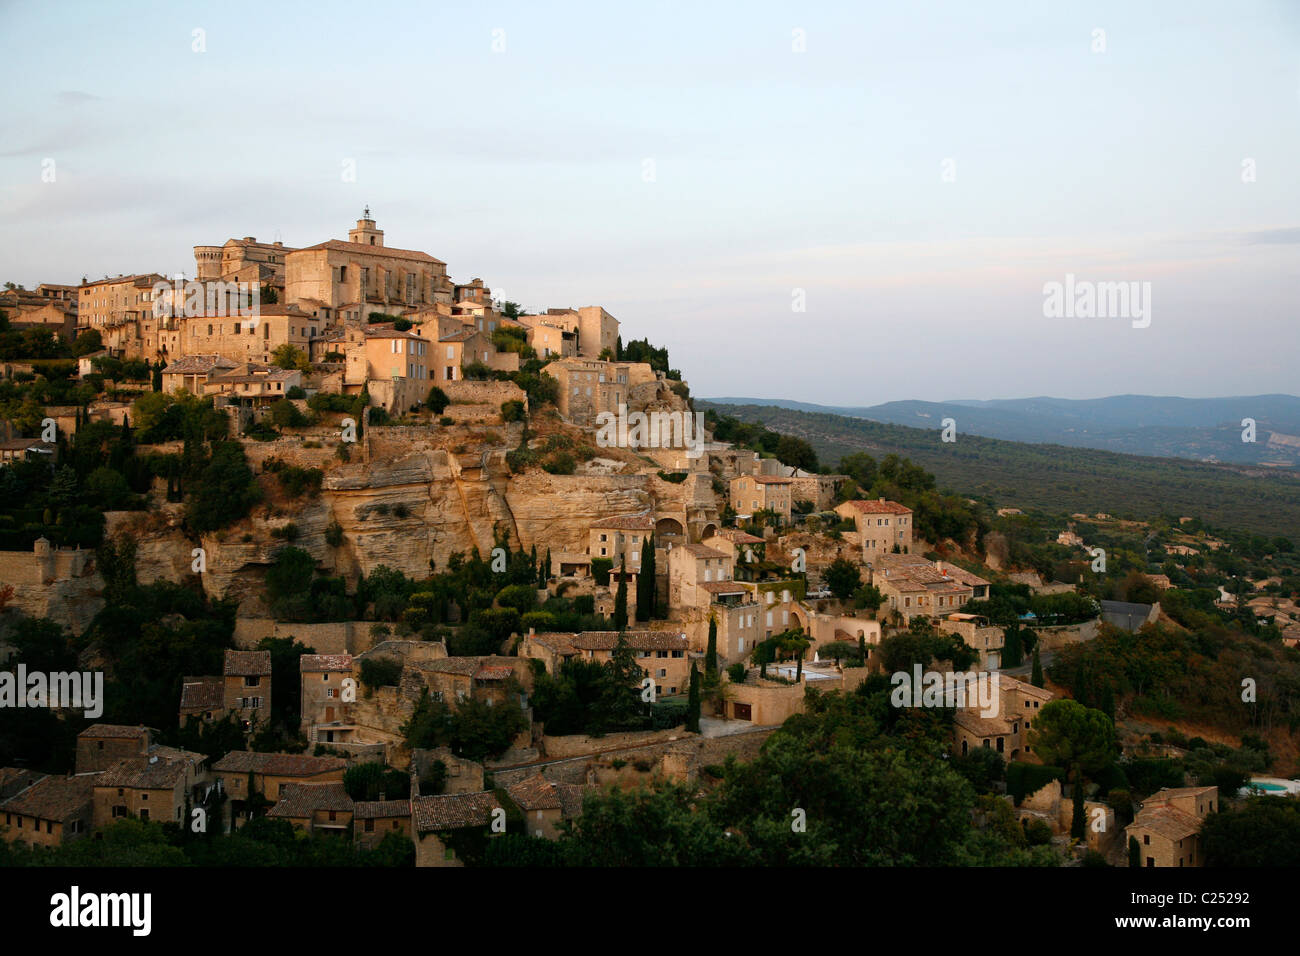 Village de Gordes, Vaucluse, Provence, France. Banque D'Images